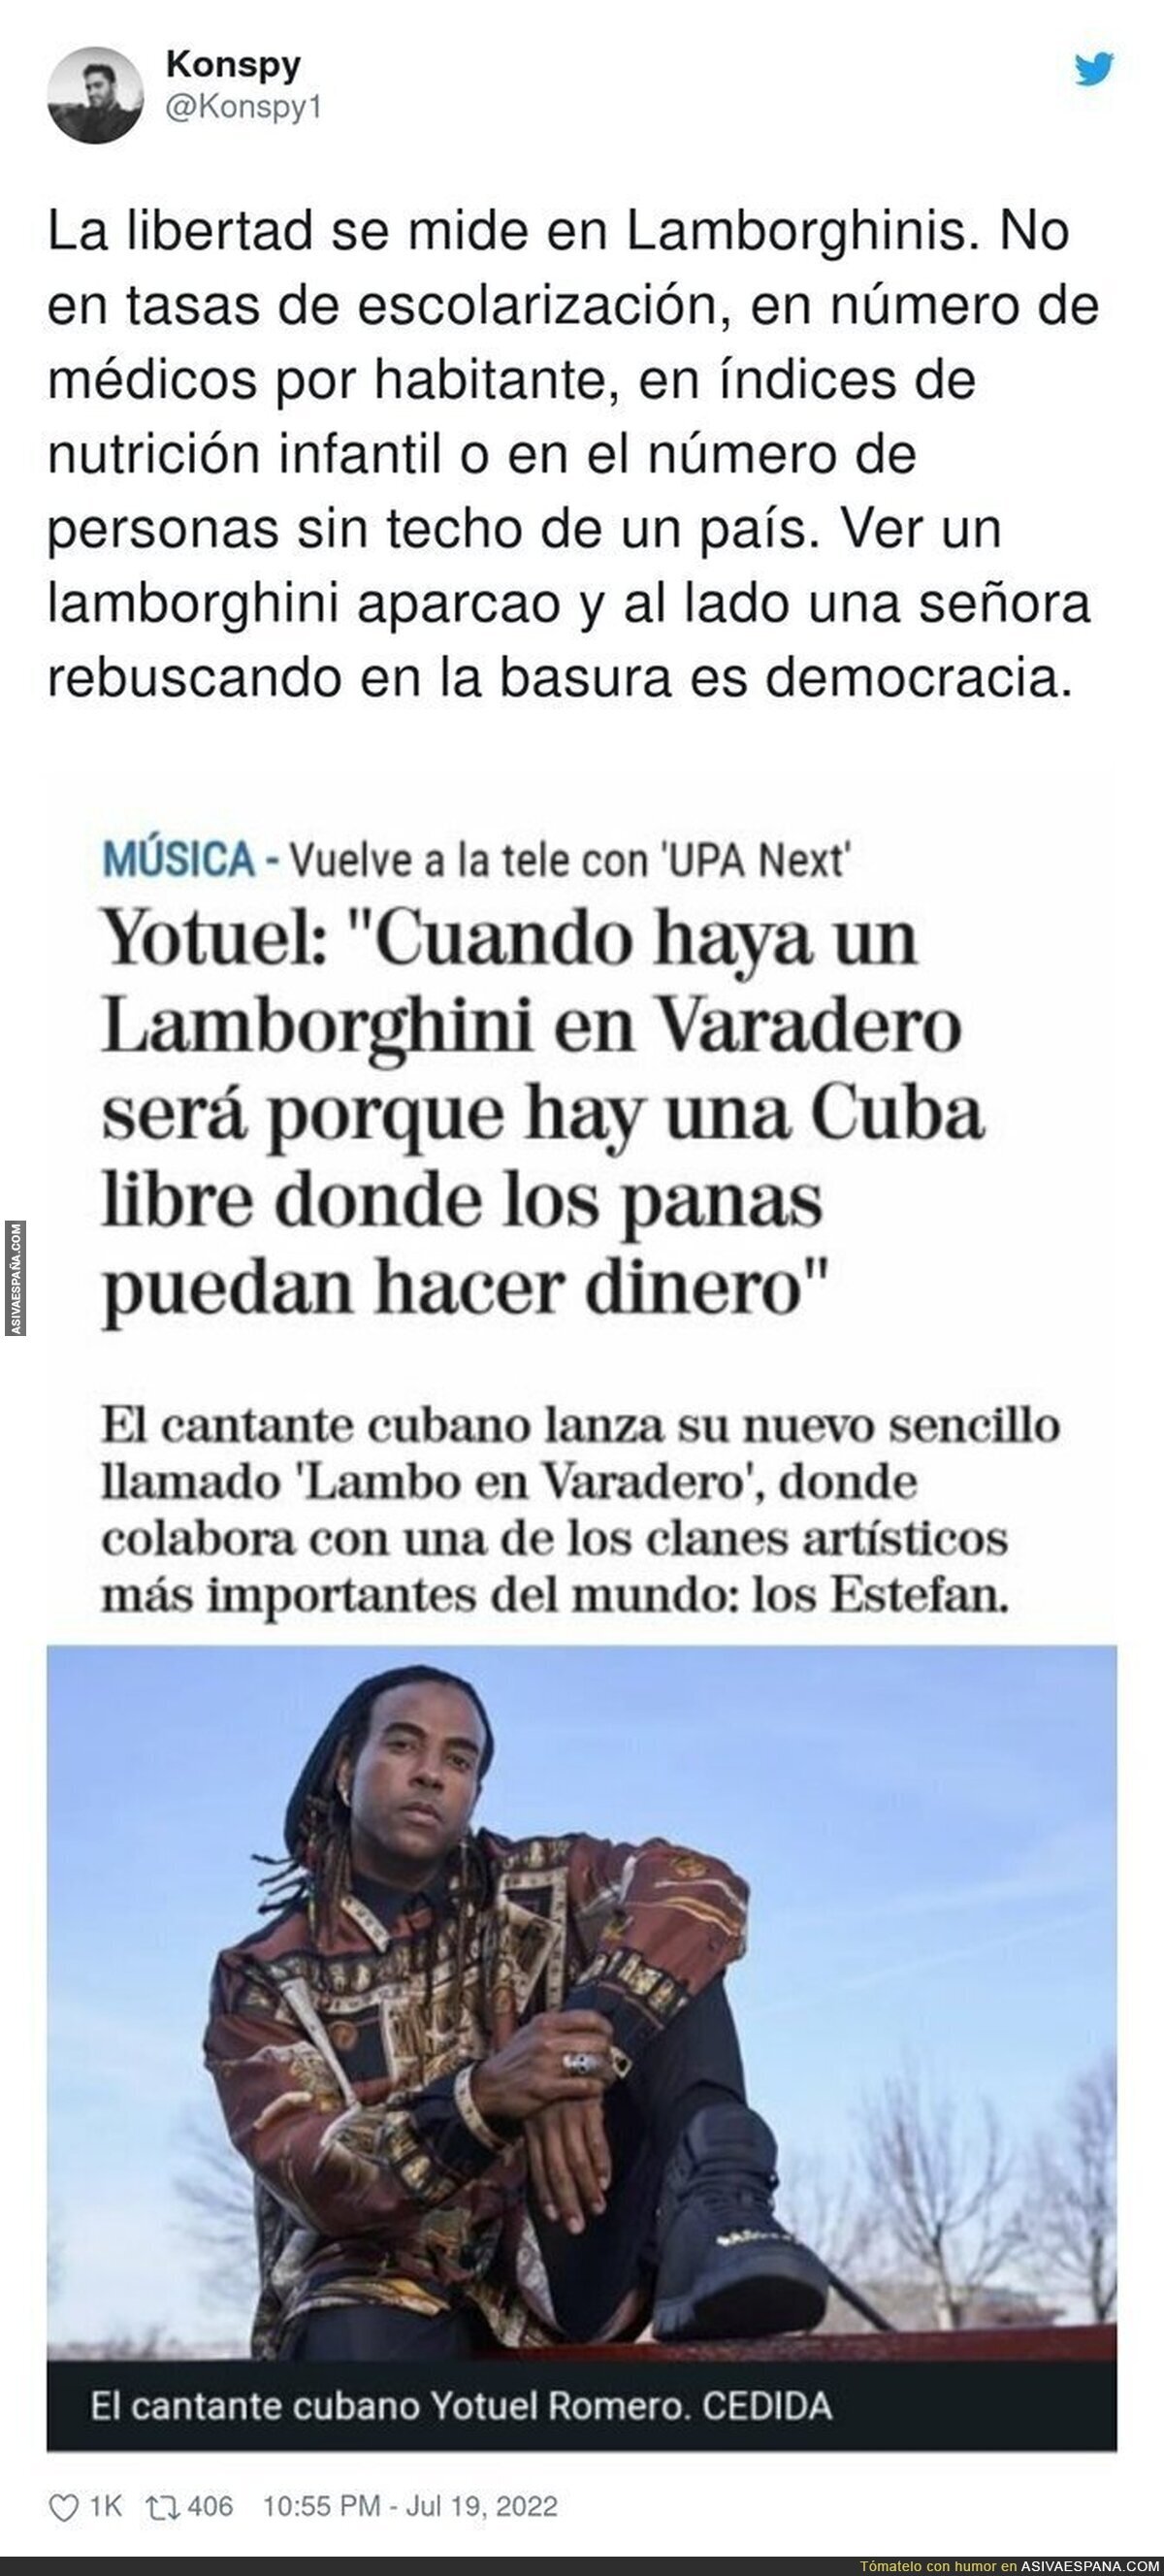 La Cuba libre según Yotuel